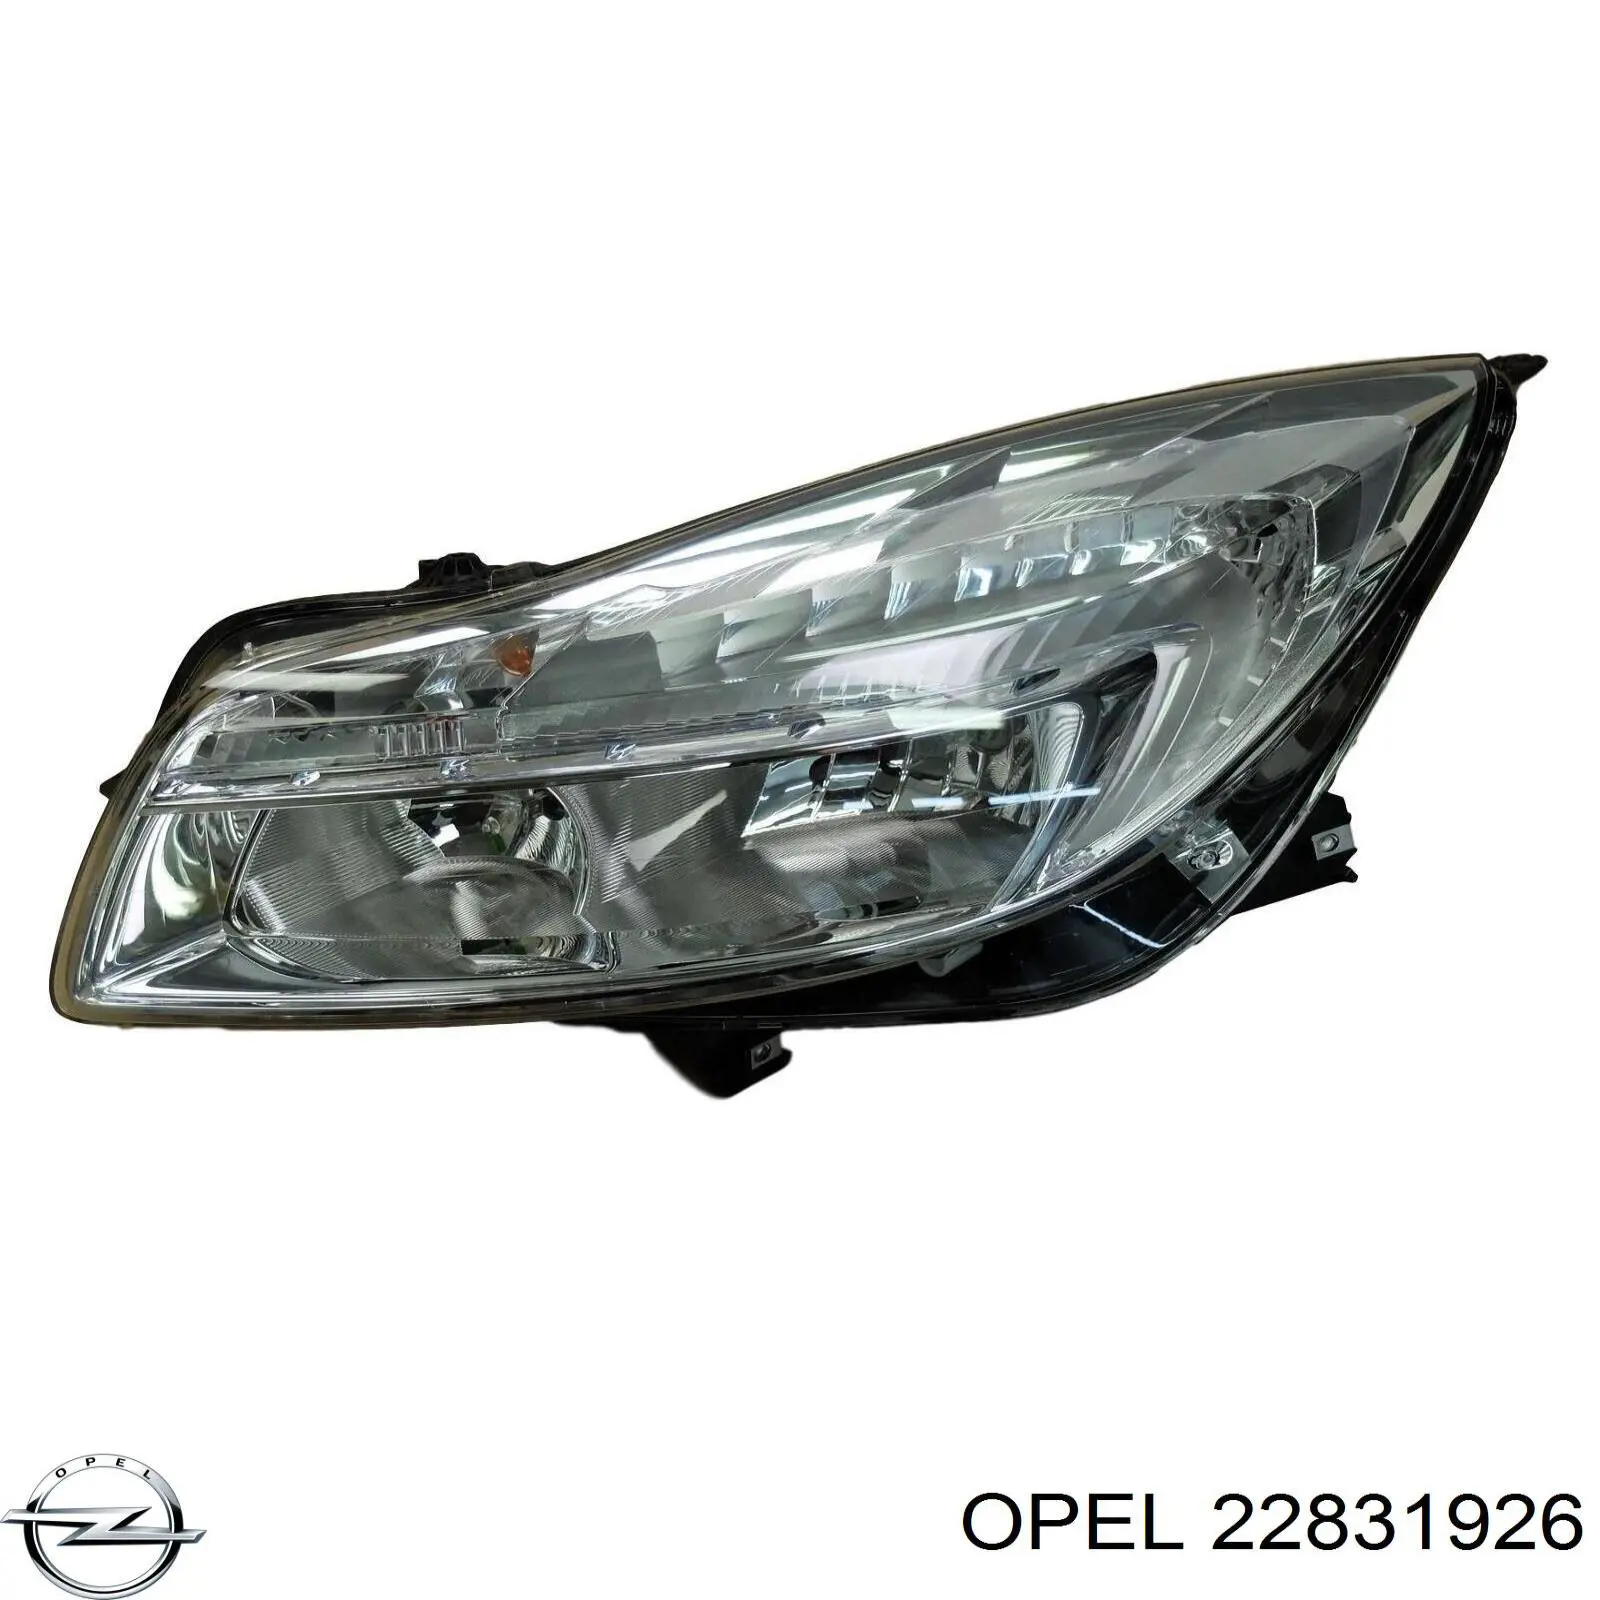 22831926 Opel luz esquerda